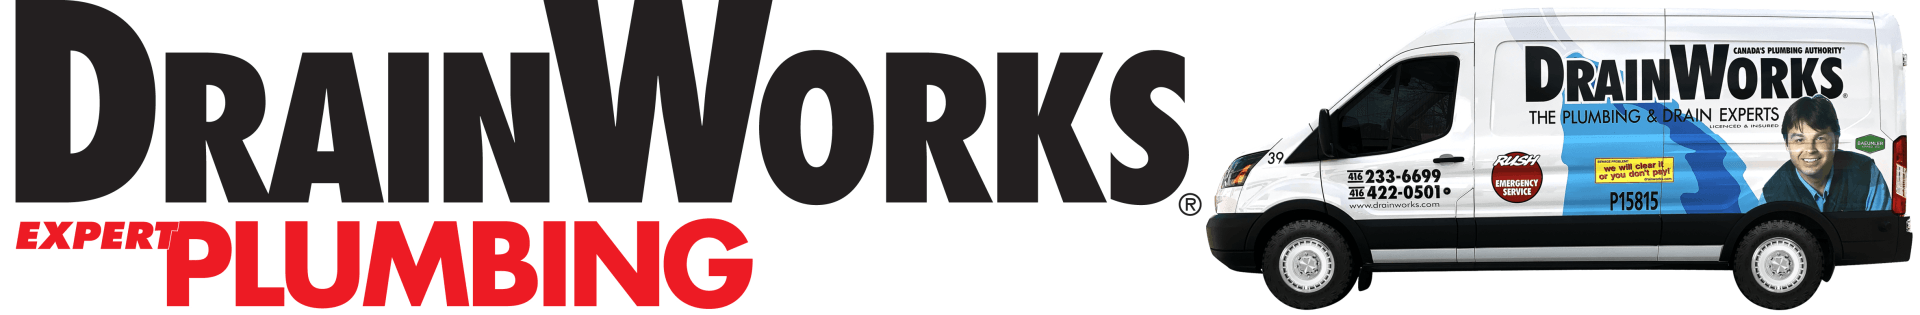 DrainWorks Plumbing Logo Toronto Plumber